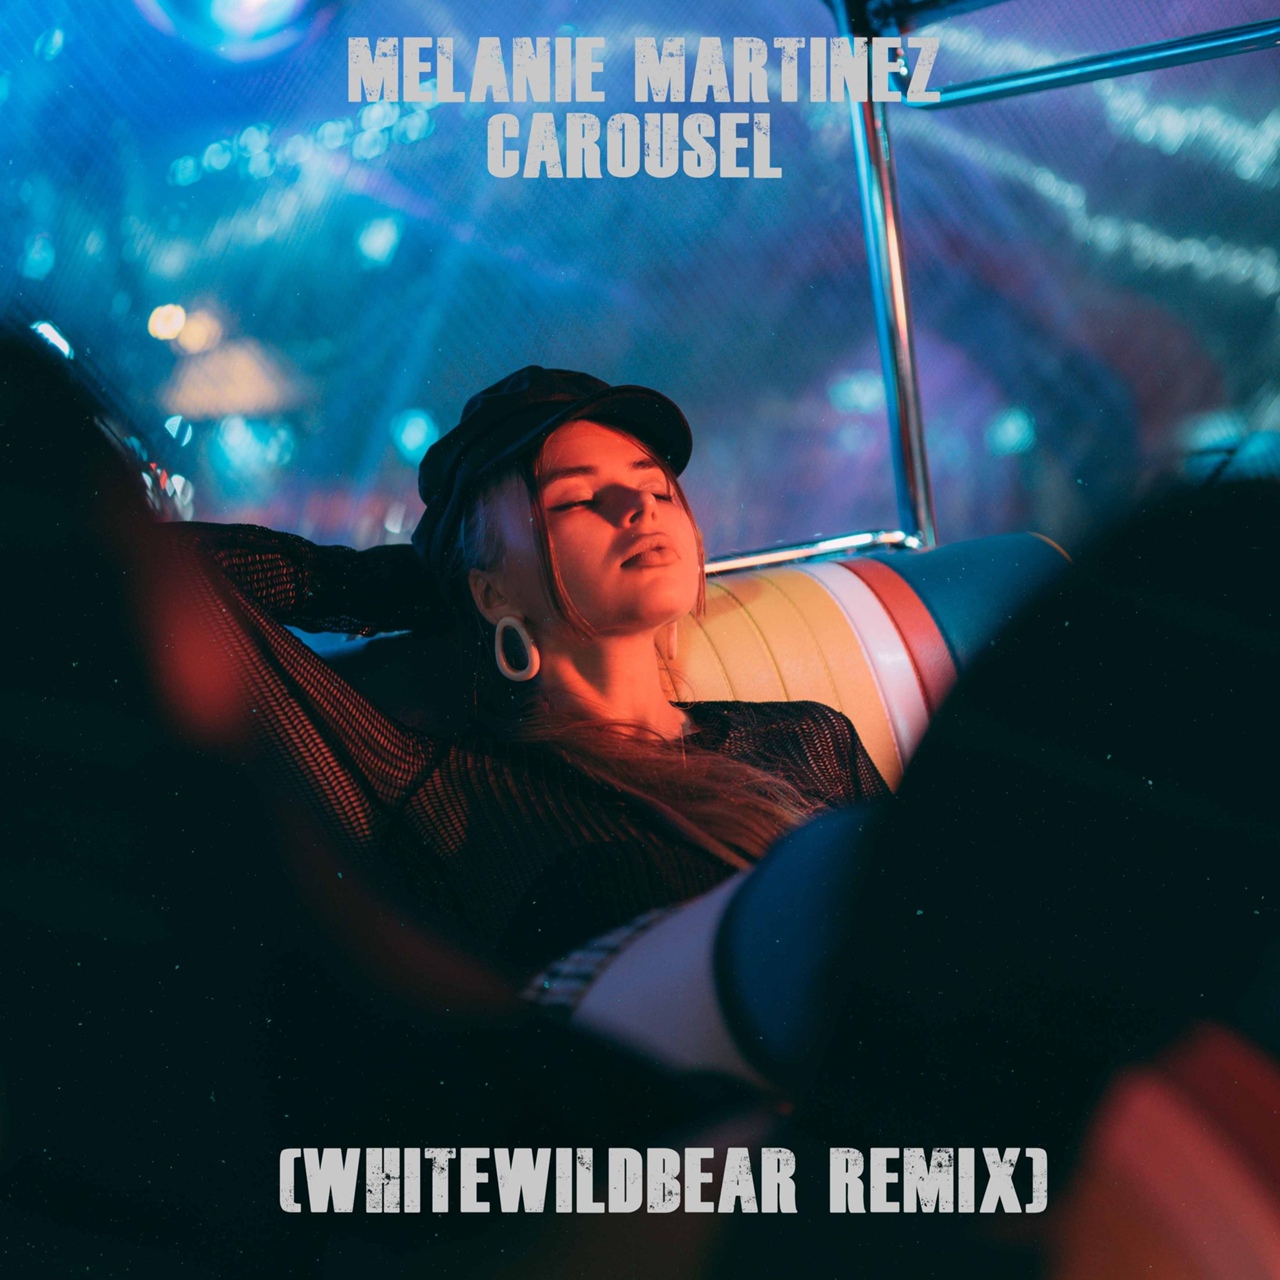 Melanie Martinez - Carousel (Whitewildbear Remix)